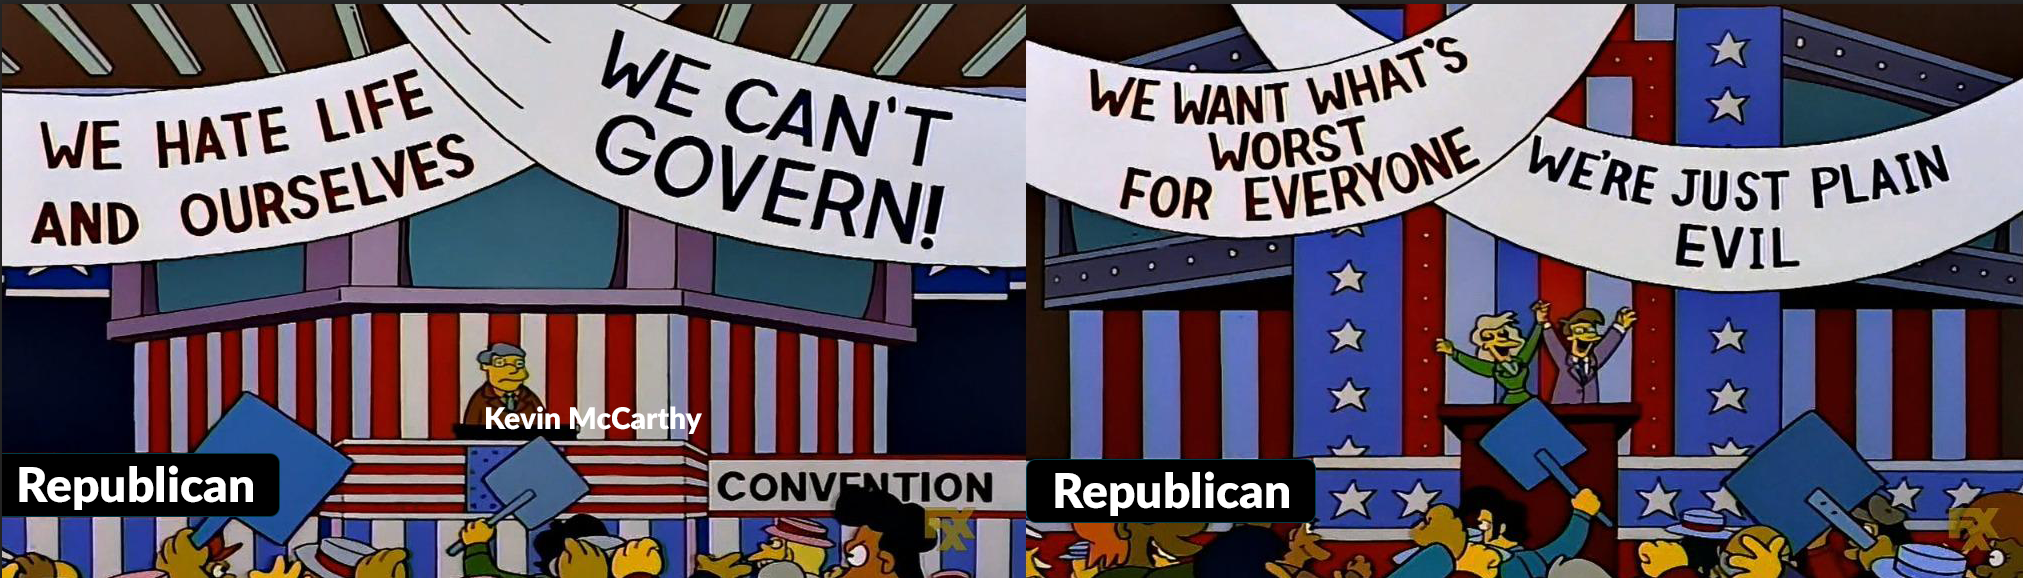 Simpsons Party Convention Meme